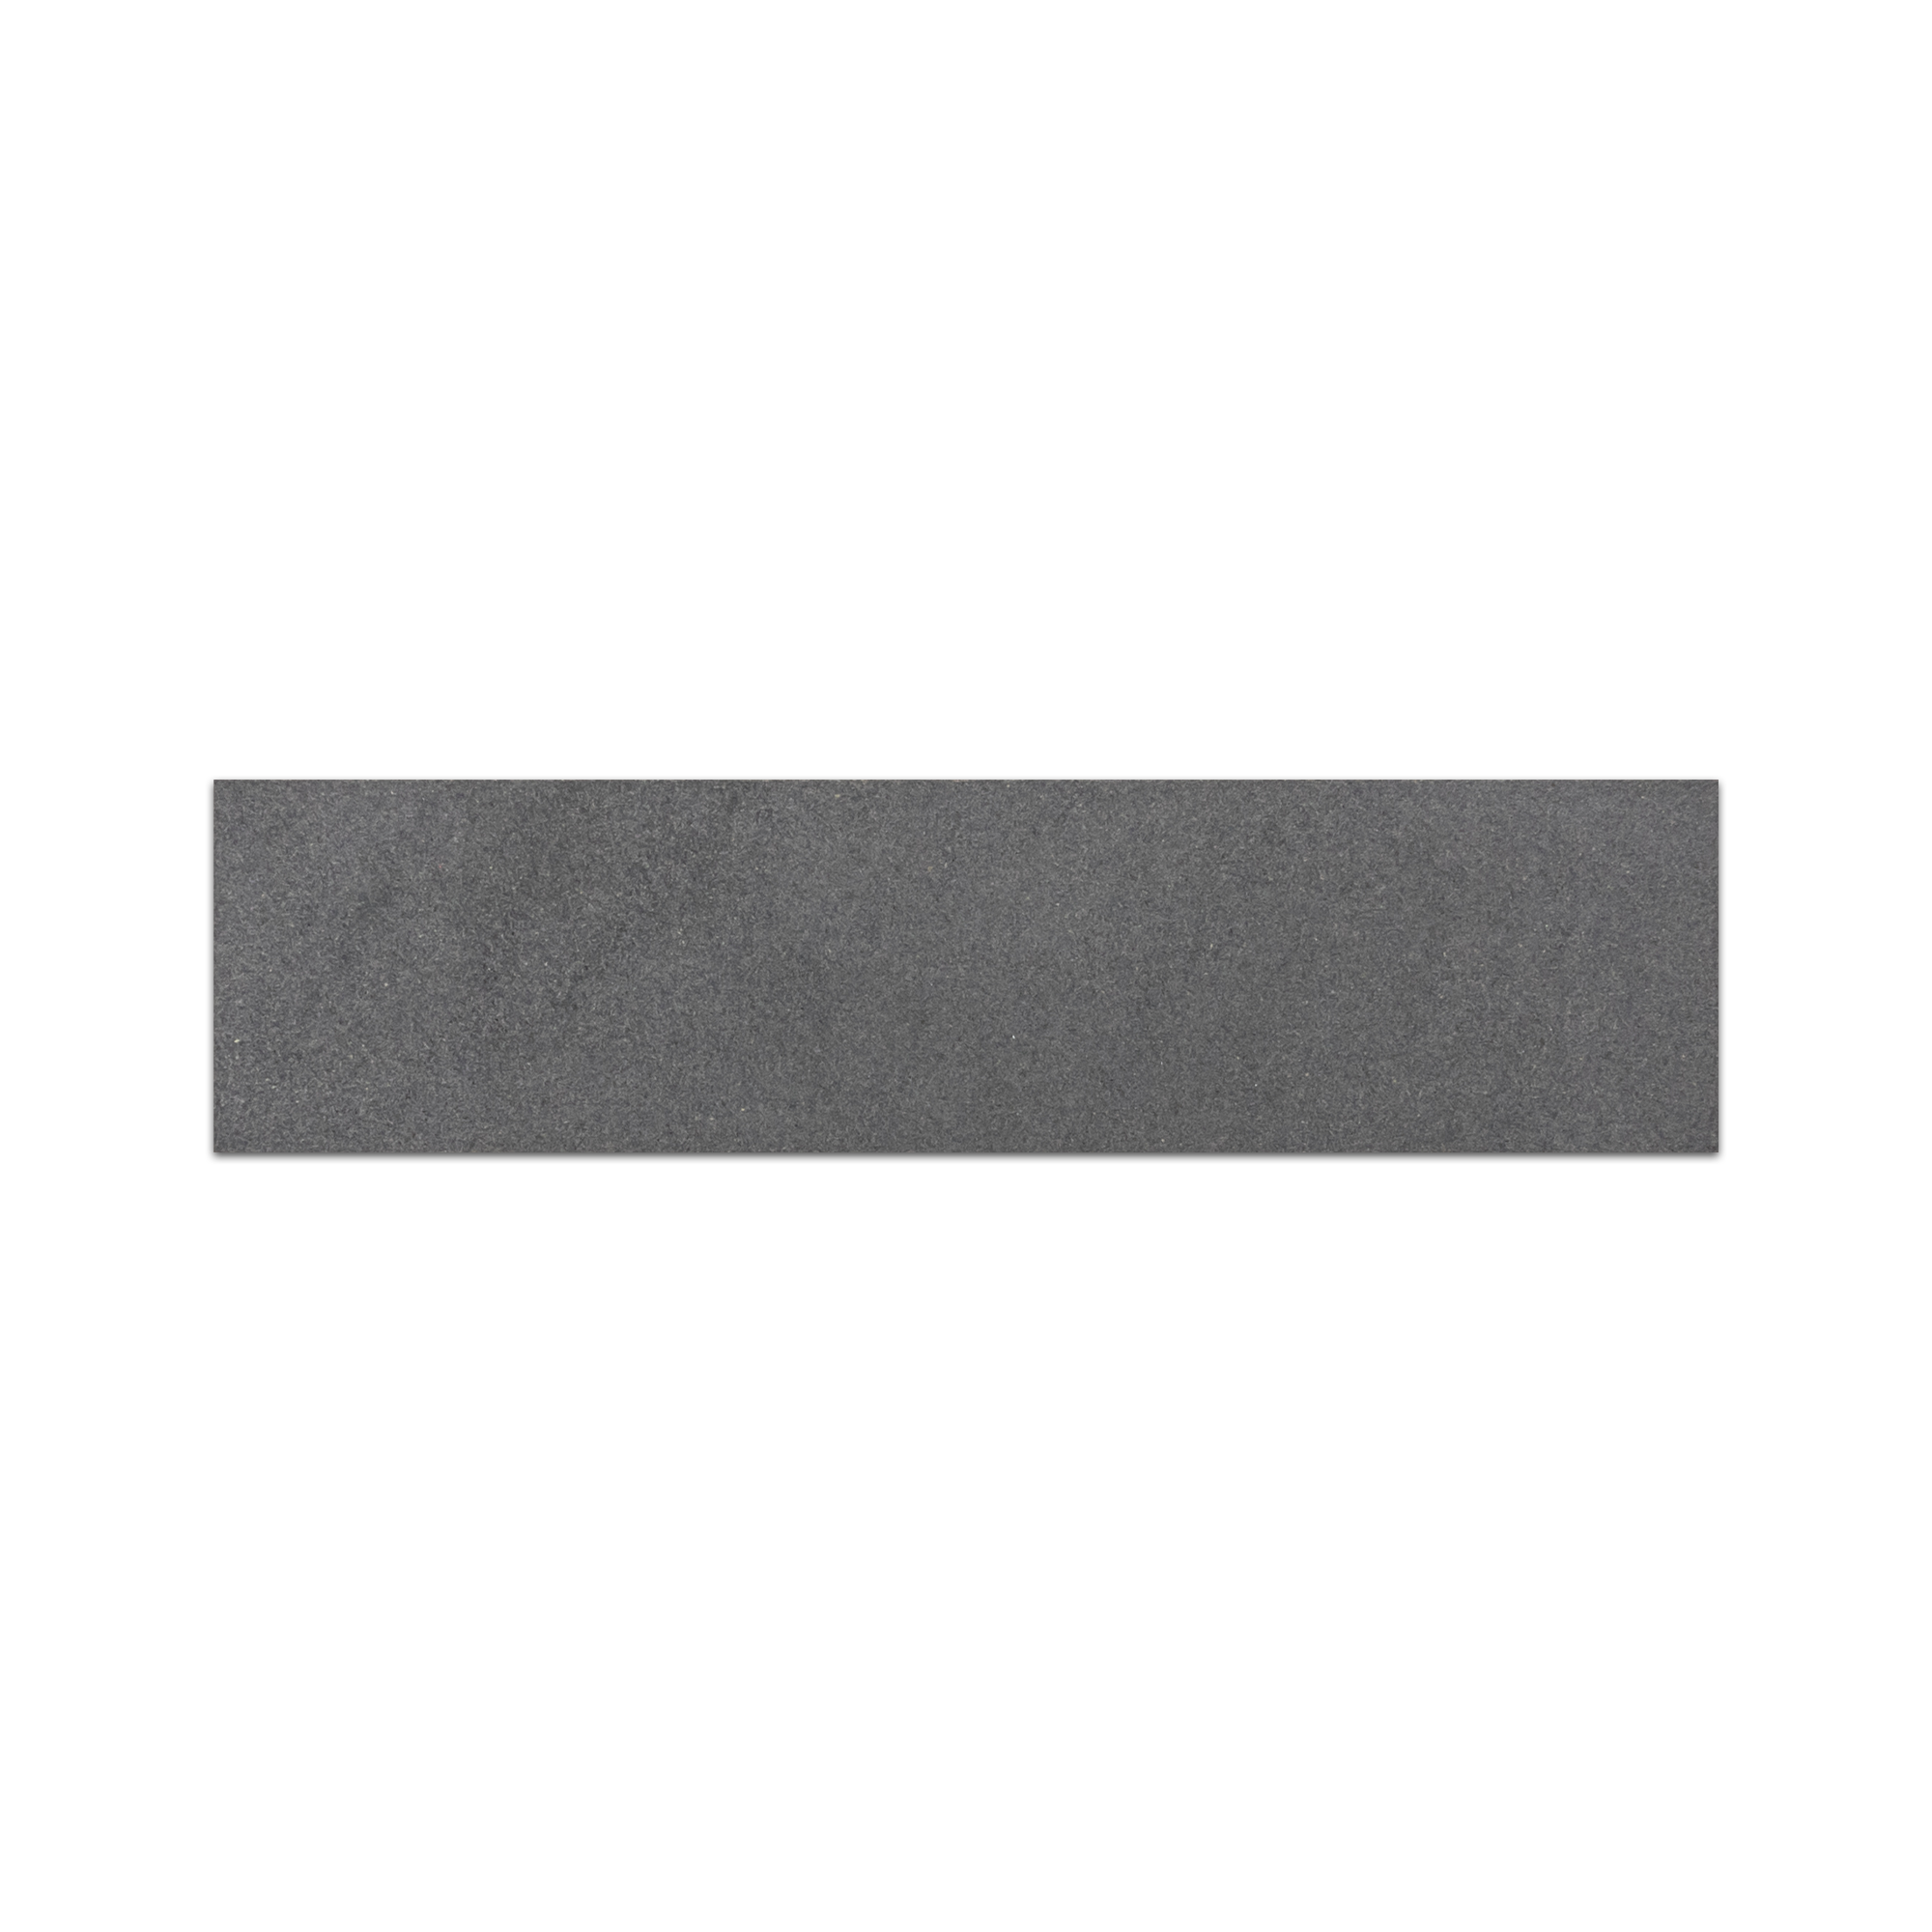 Elon grey basalt rectangle field tile 3x12x0.375 honed VT0312H - Surface Group International